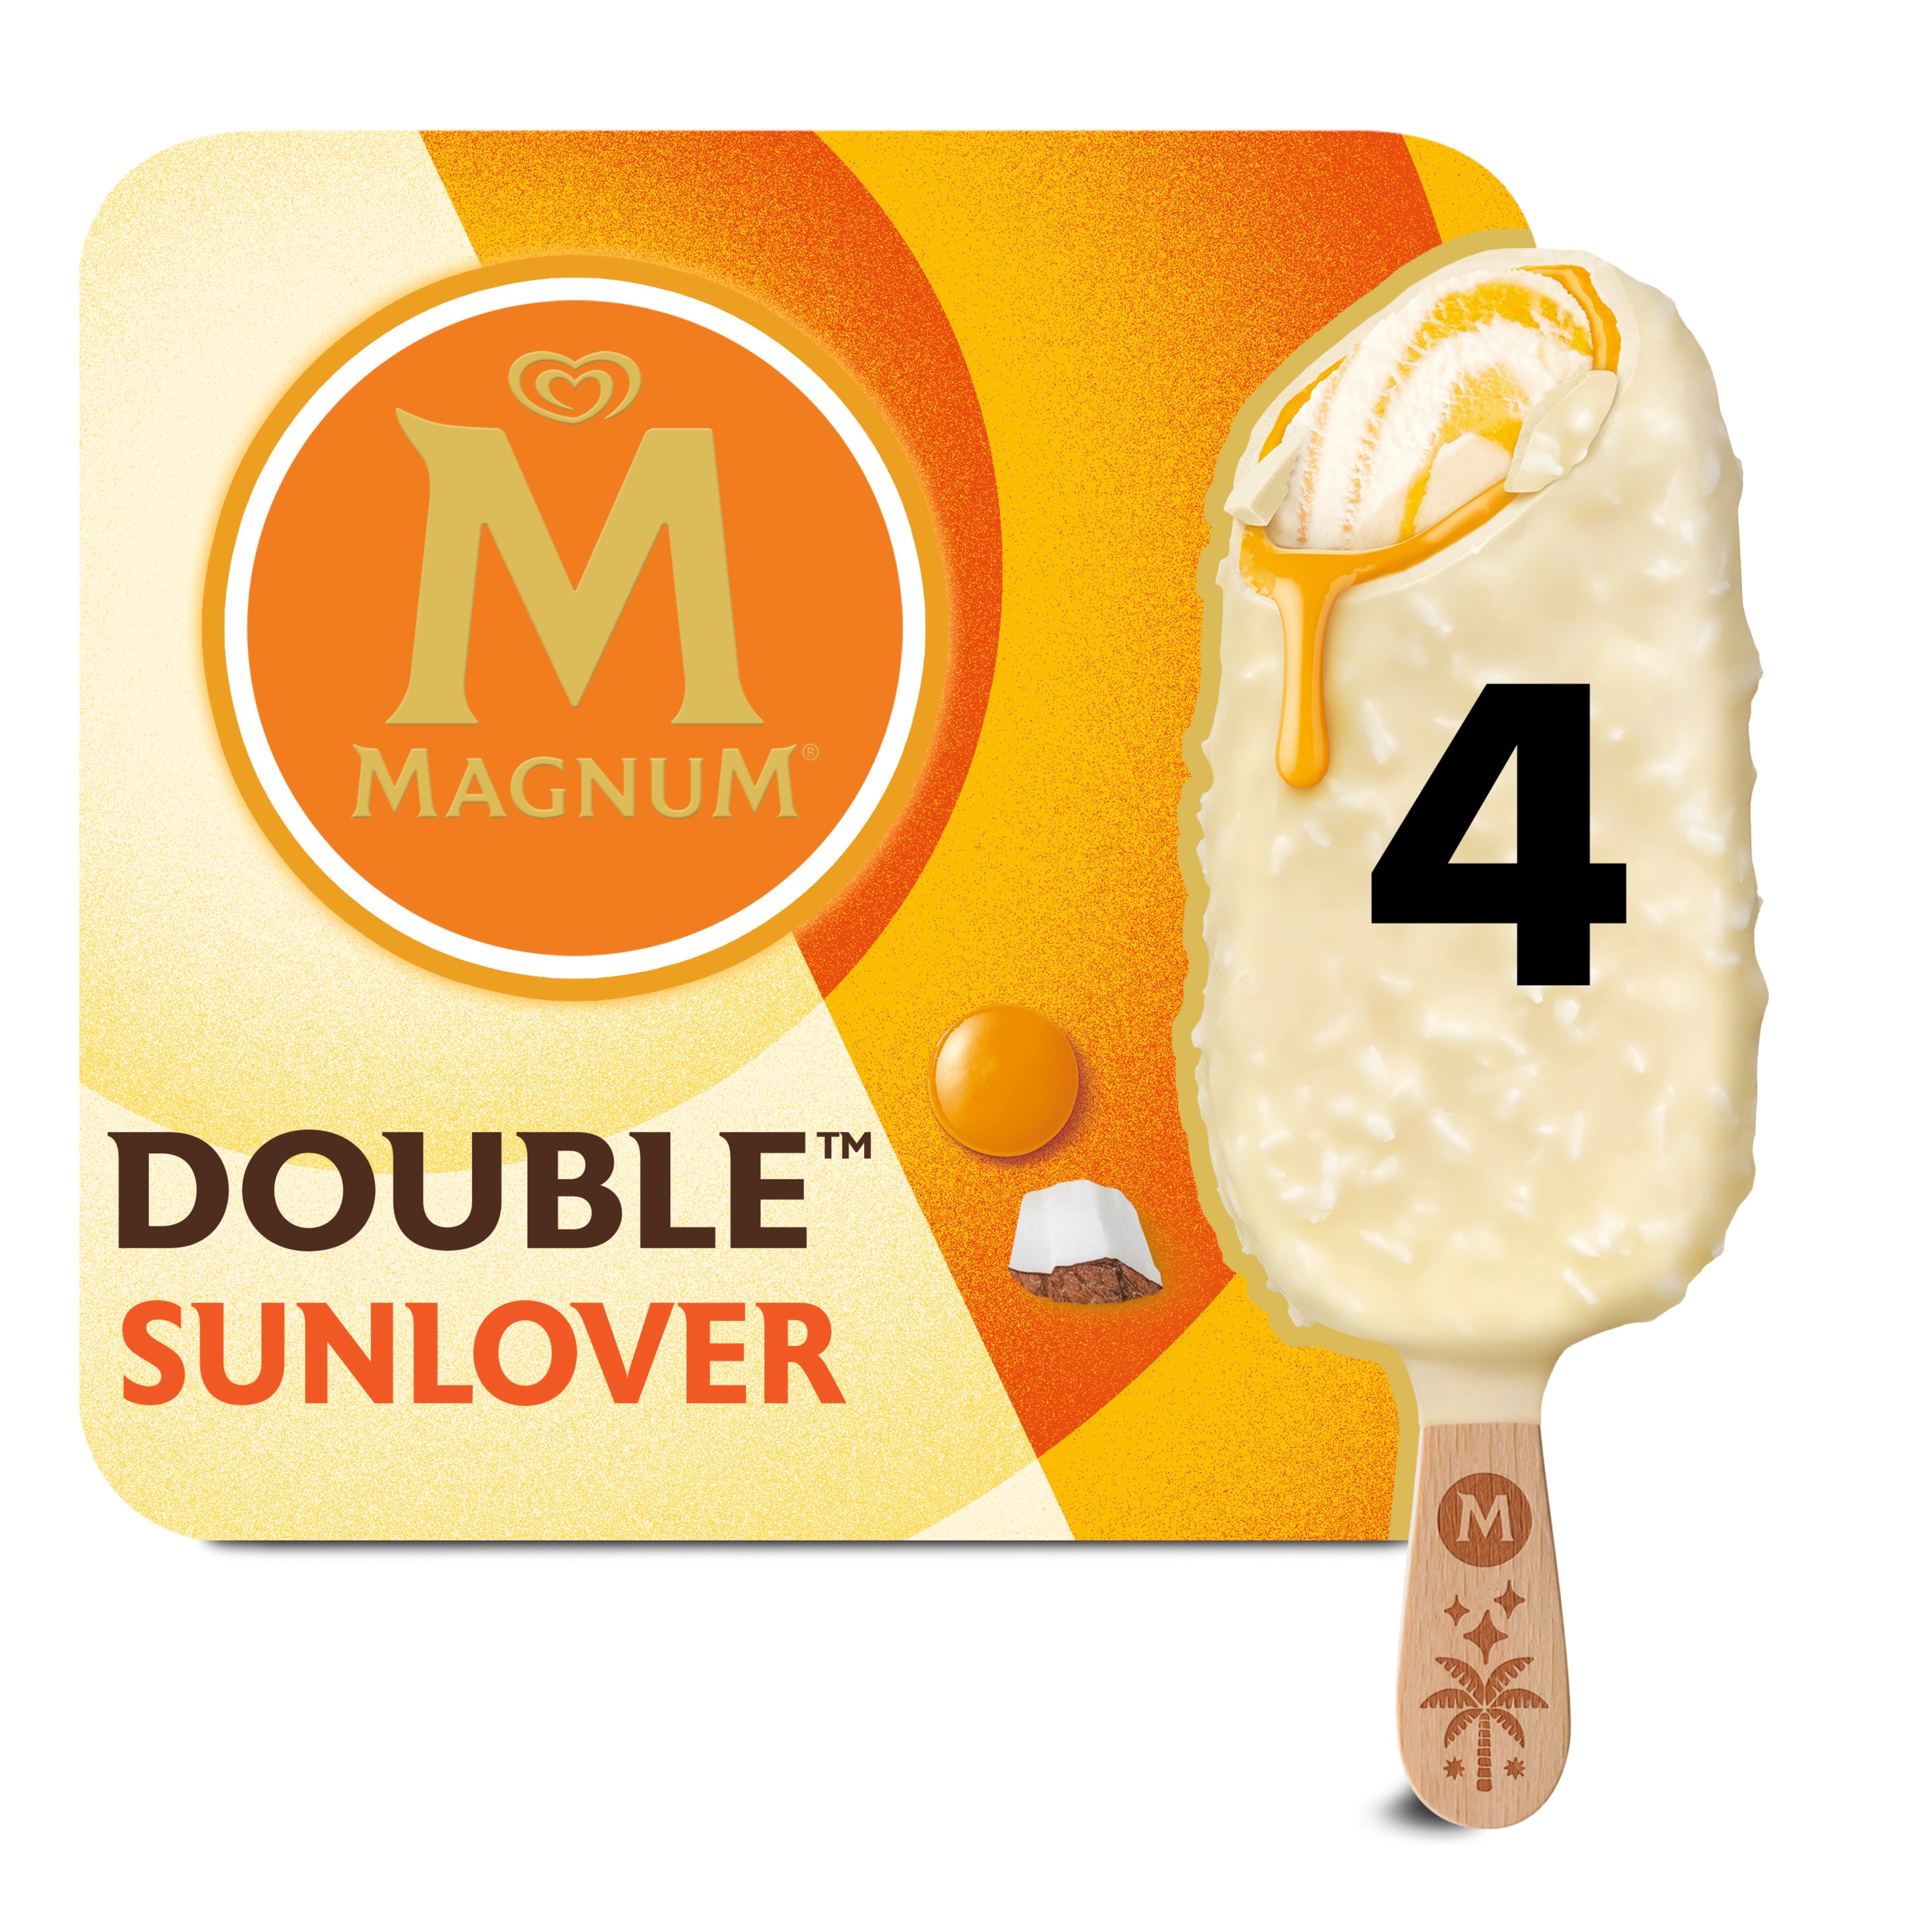 Magnum Double Sunlover 4 x 85 ml - Magnum Schweiz